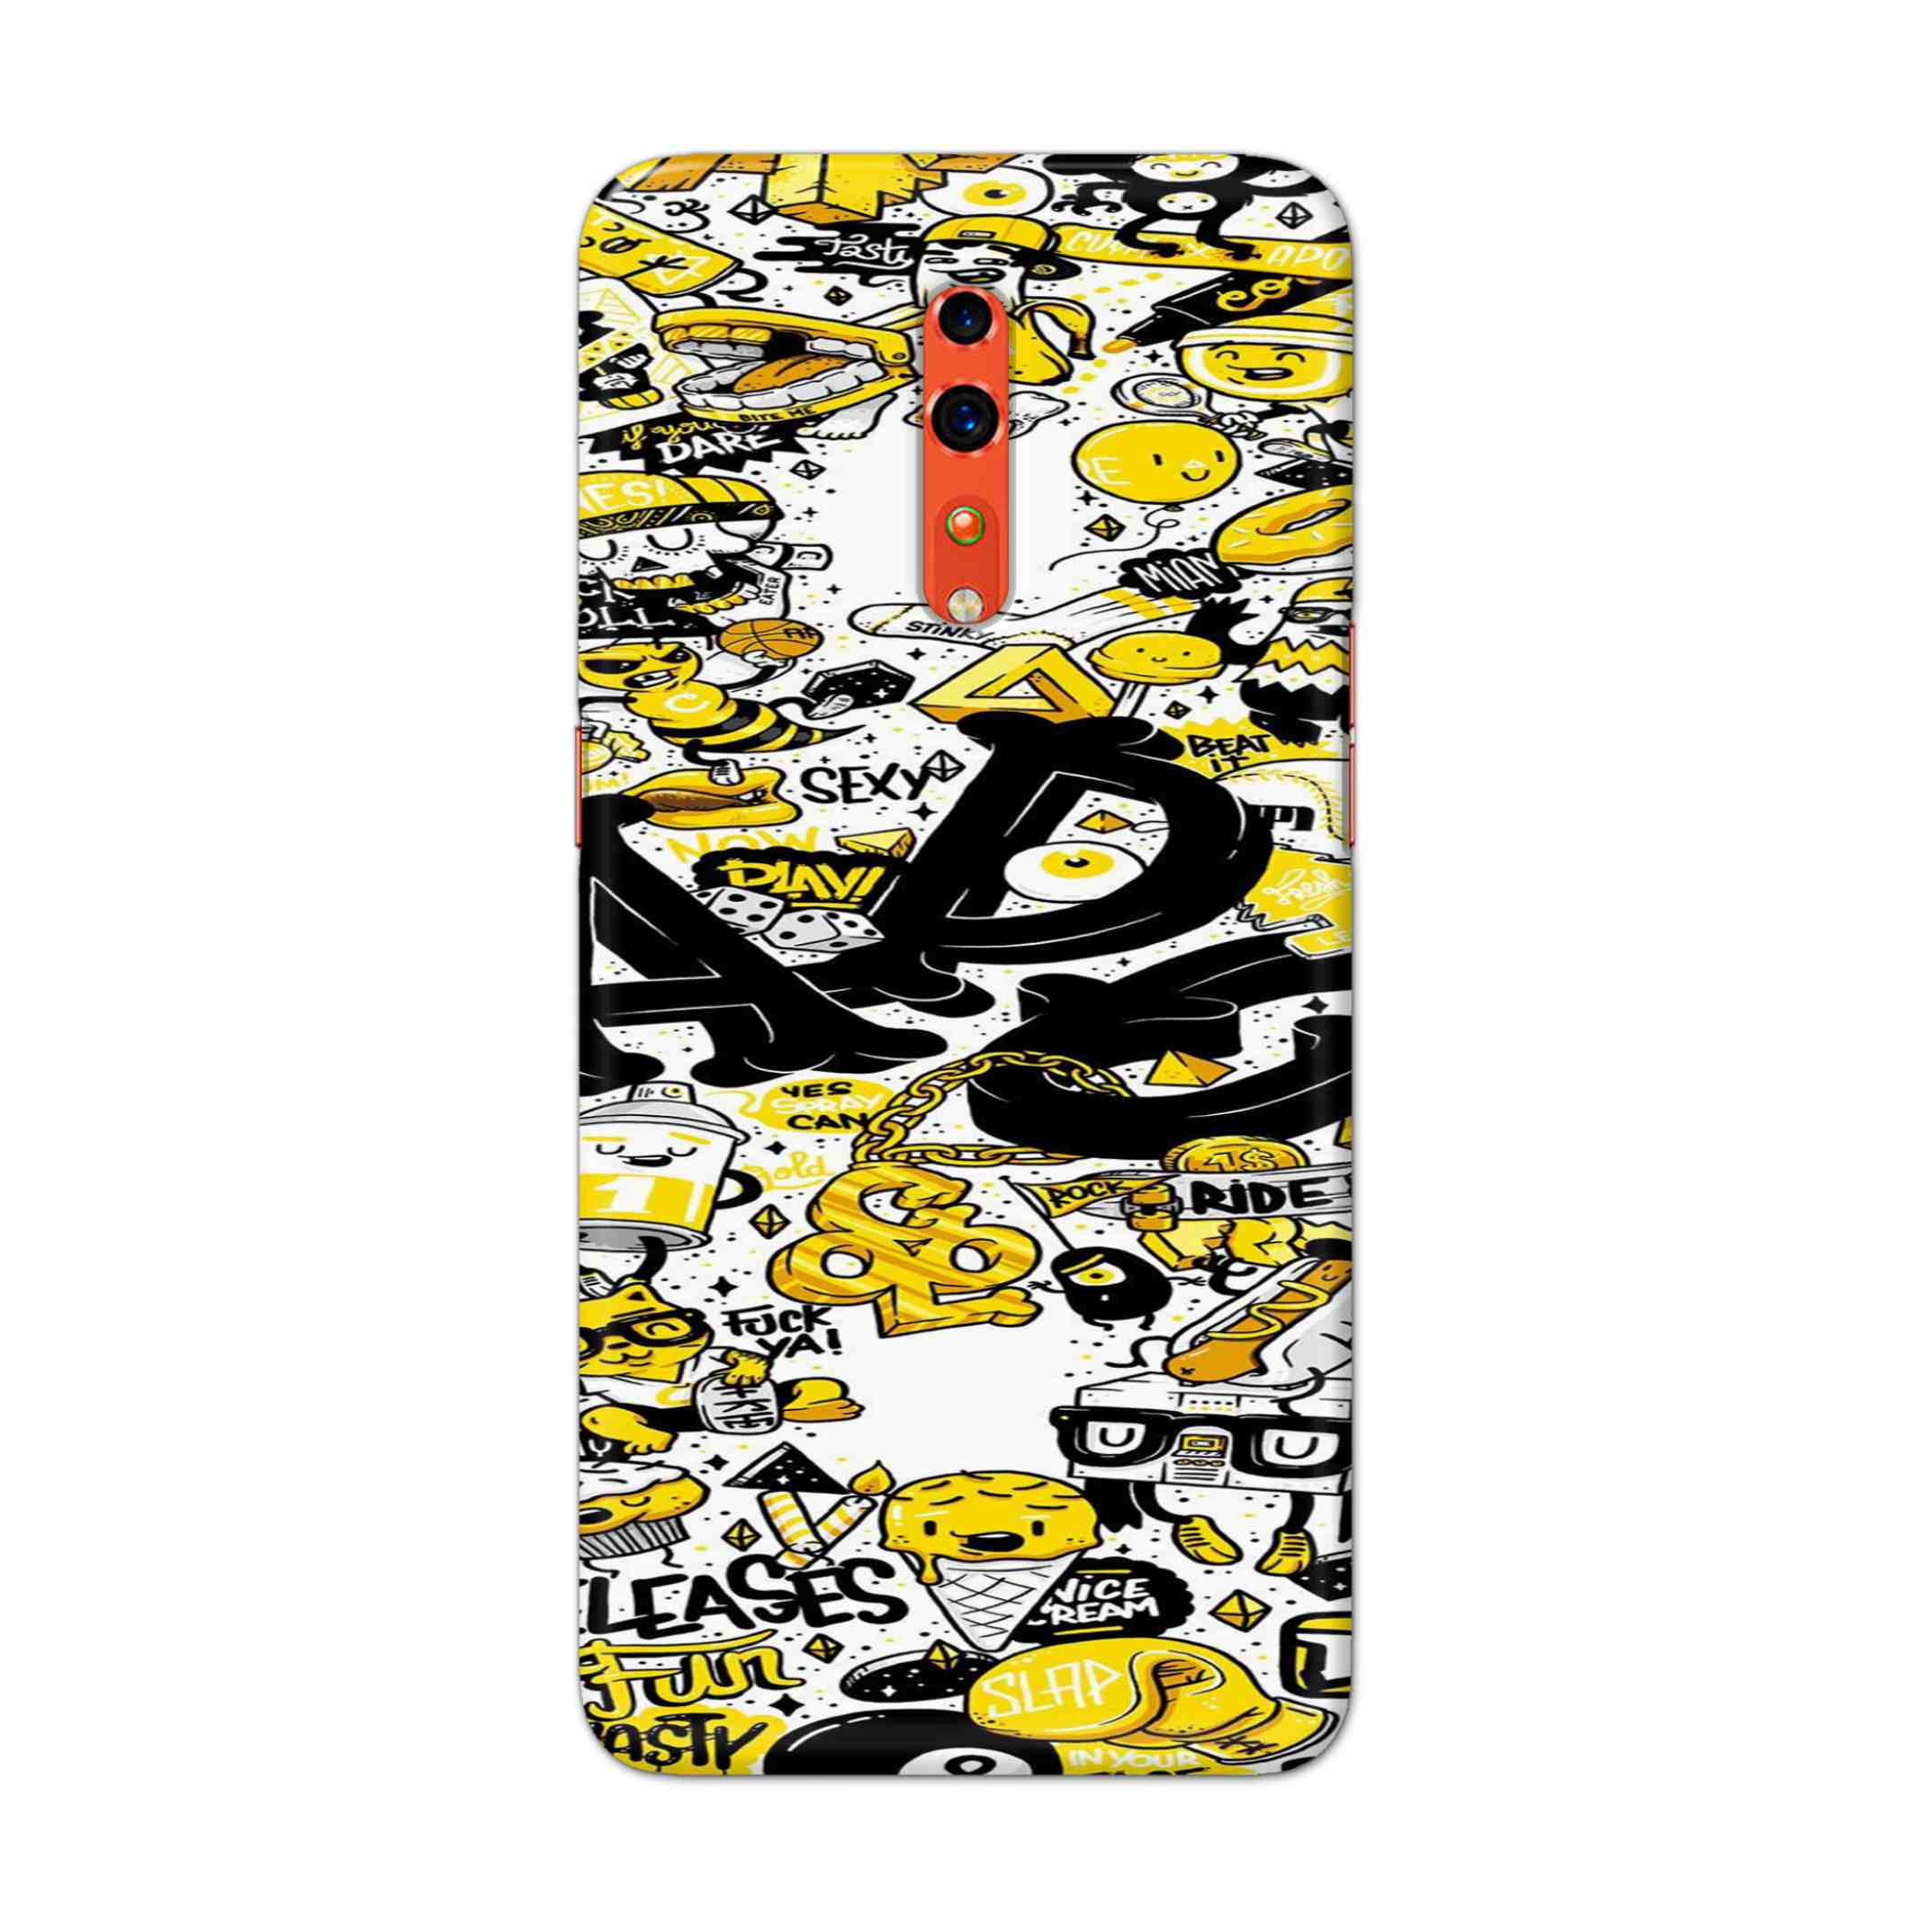 Buy Ado Hard Back Mobile Phone Case Cover For OPPO Reno Z Online